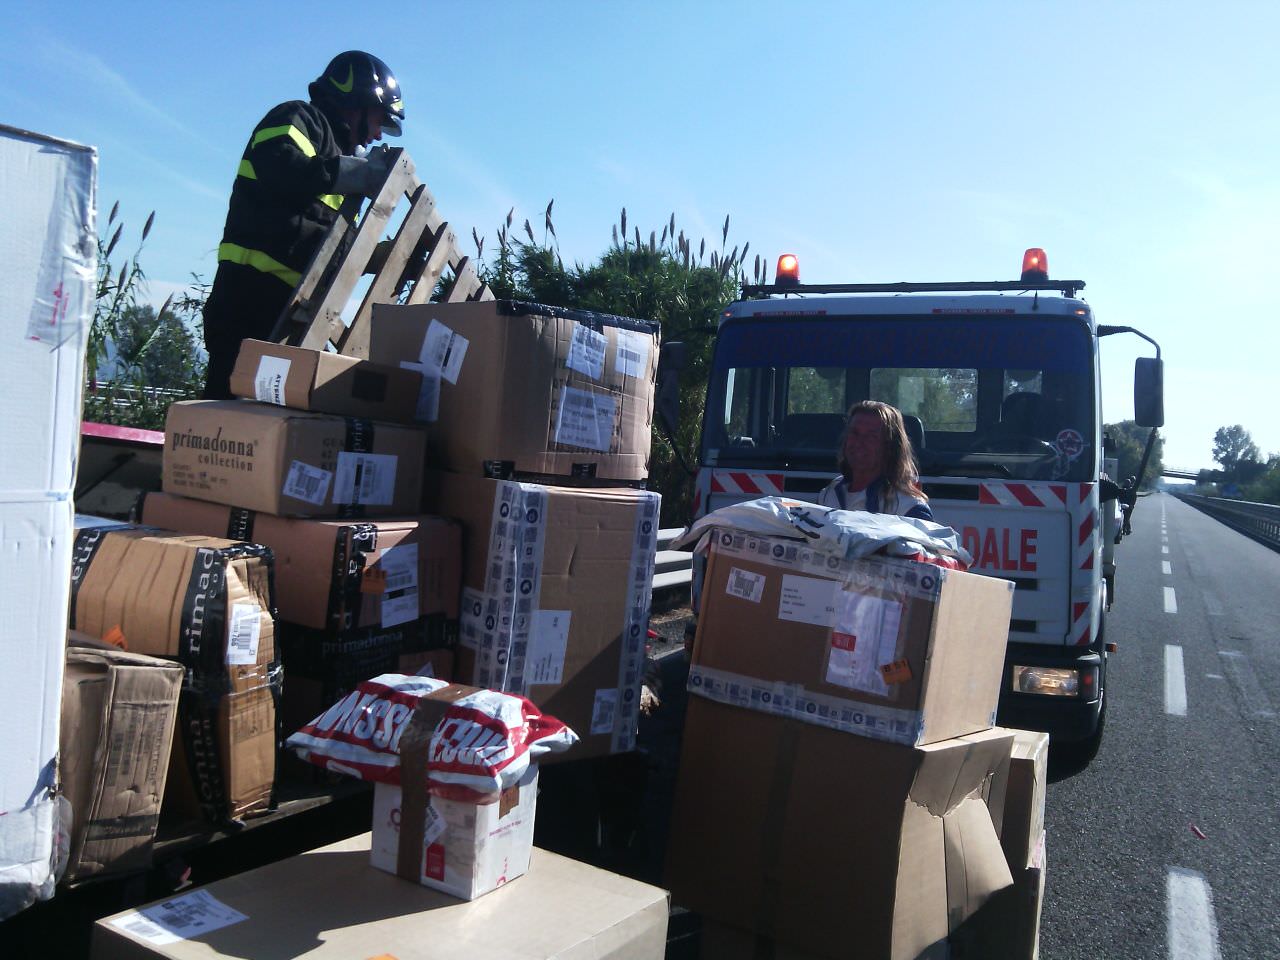 Scontro tra furgoni sulla variante: centinaia di scatole sull’asfalto (le foto)